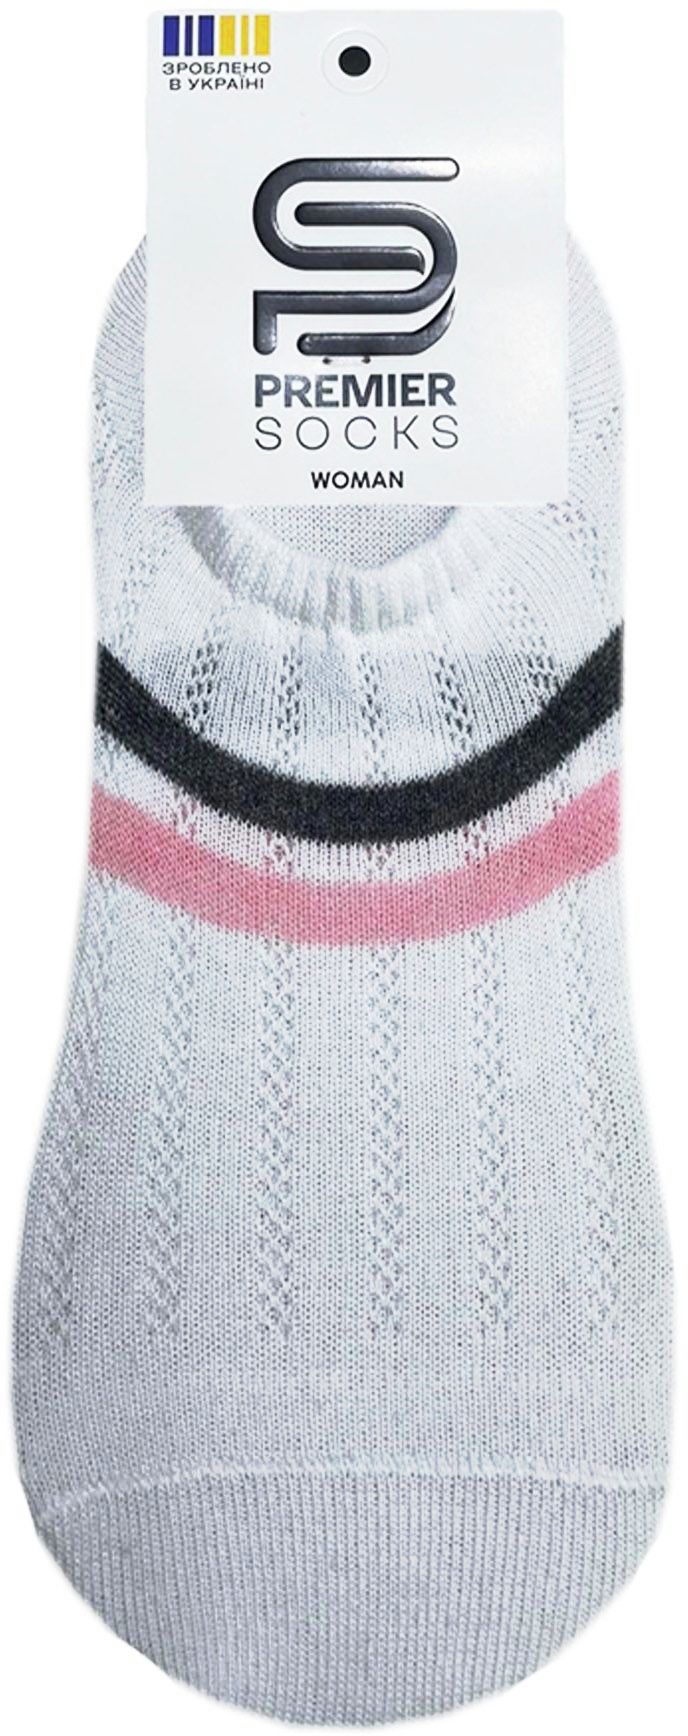 Шкарпетки жіночі Premier Socks 36-40 1 пара білі з кольоровими смужками (4820163319148)фото2